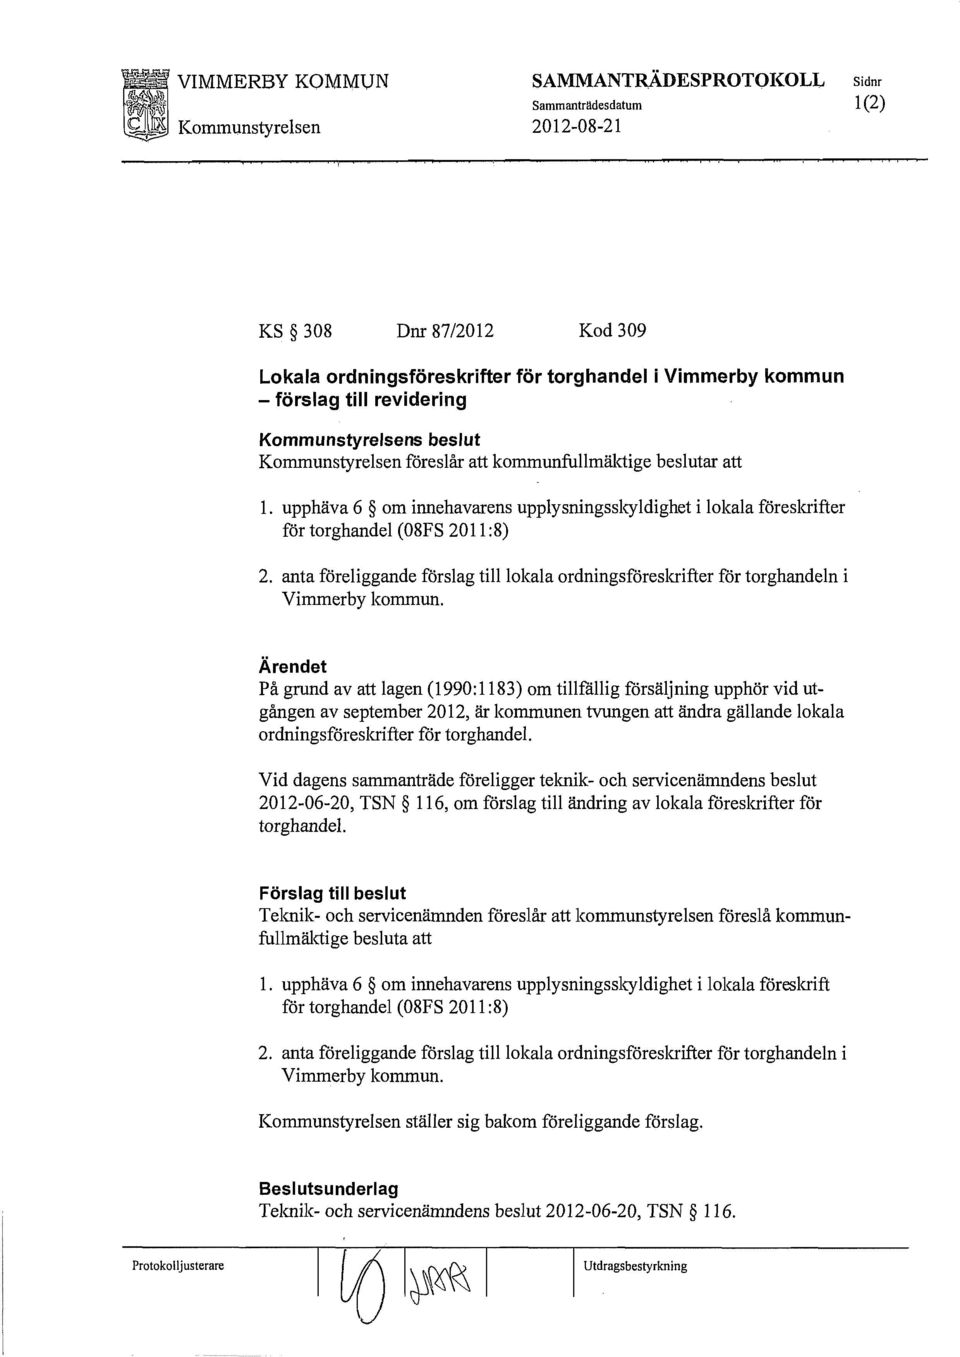 anta föreliggande förslag till lokala ordningsföreskrifter för torghandeln i Vimmerby kommun.